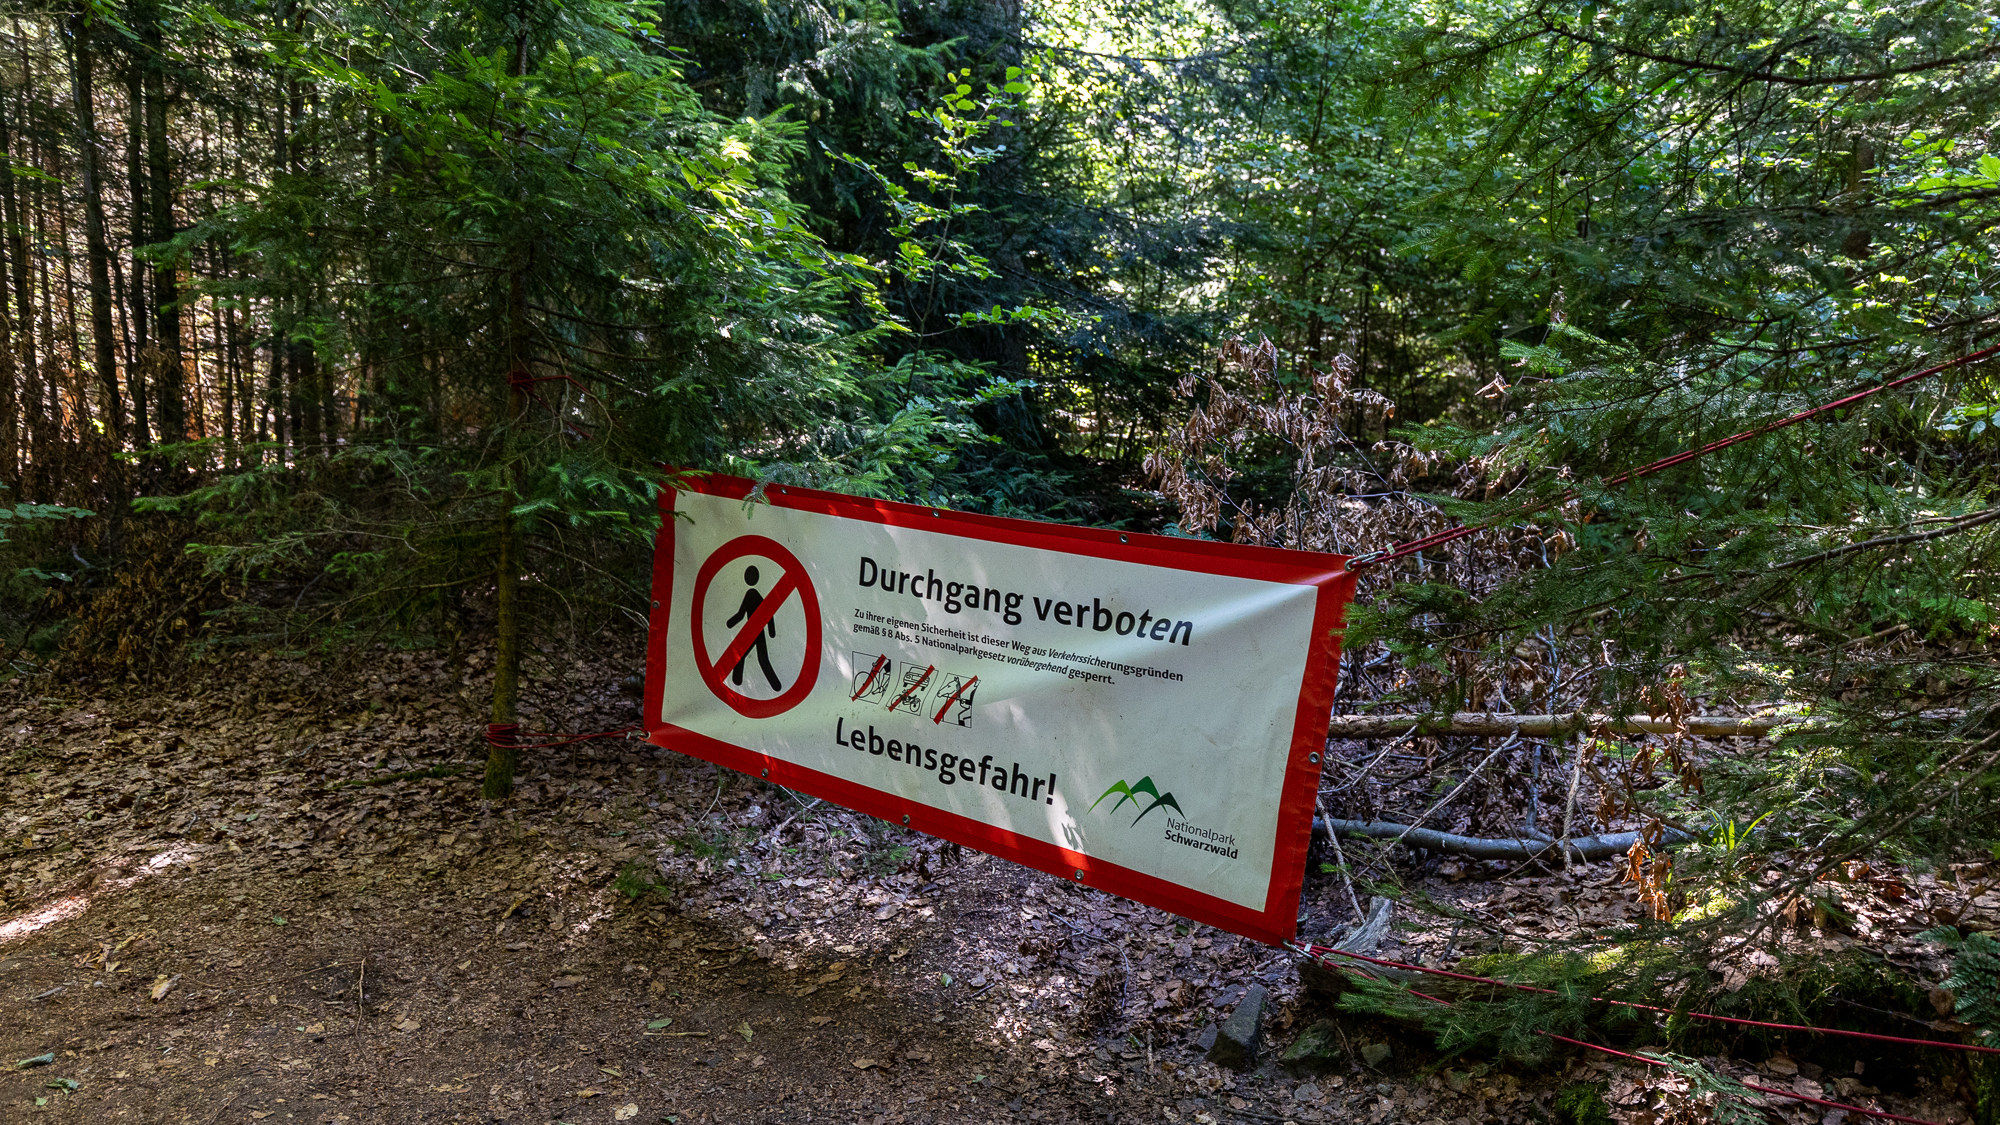 Das Bild zeigt ein Schild, das vor dem Betreten des Waldes an dieser Stelle warnt, da hier Lebensgefahr besteht